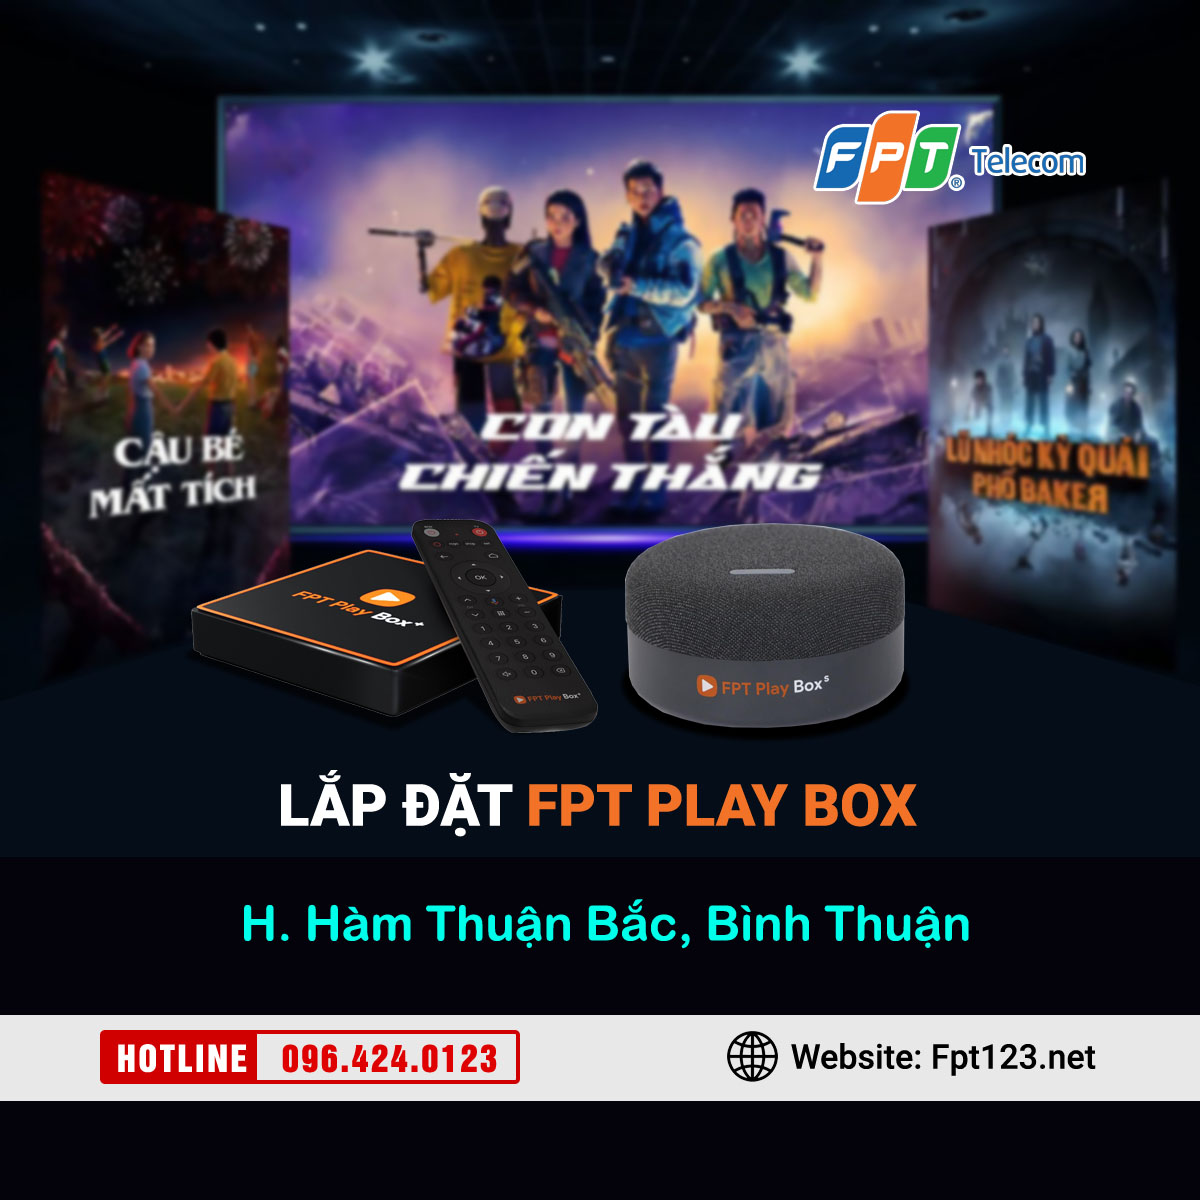 Lắp đặt FPT Play Box ở Hàm Thuận Bắc, Bình Thuận